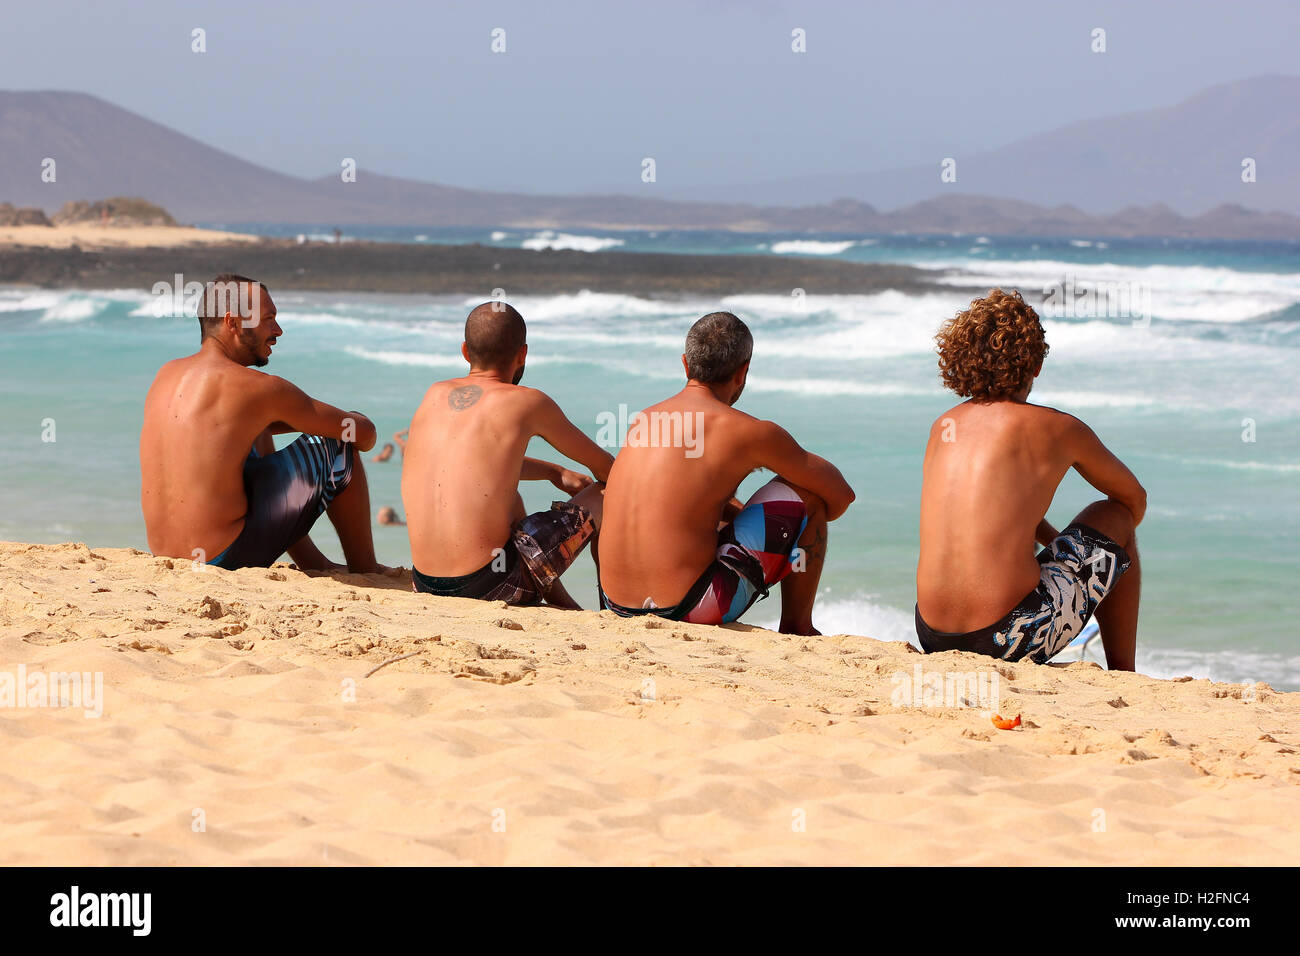 Surfer am Strand von der Dünung, Fuerteventura, Kanarische Inseln Stockfoto